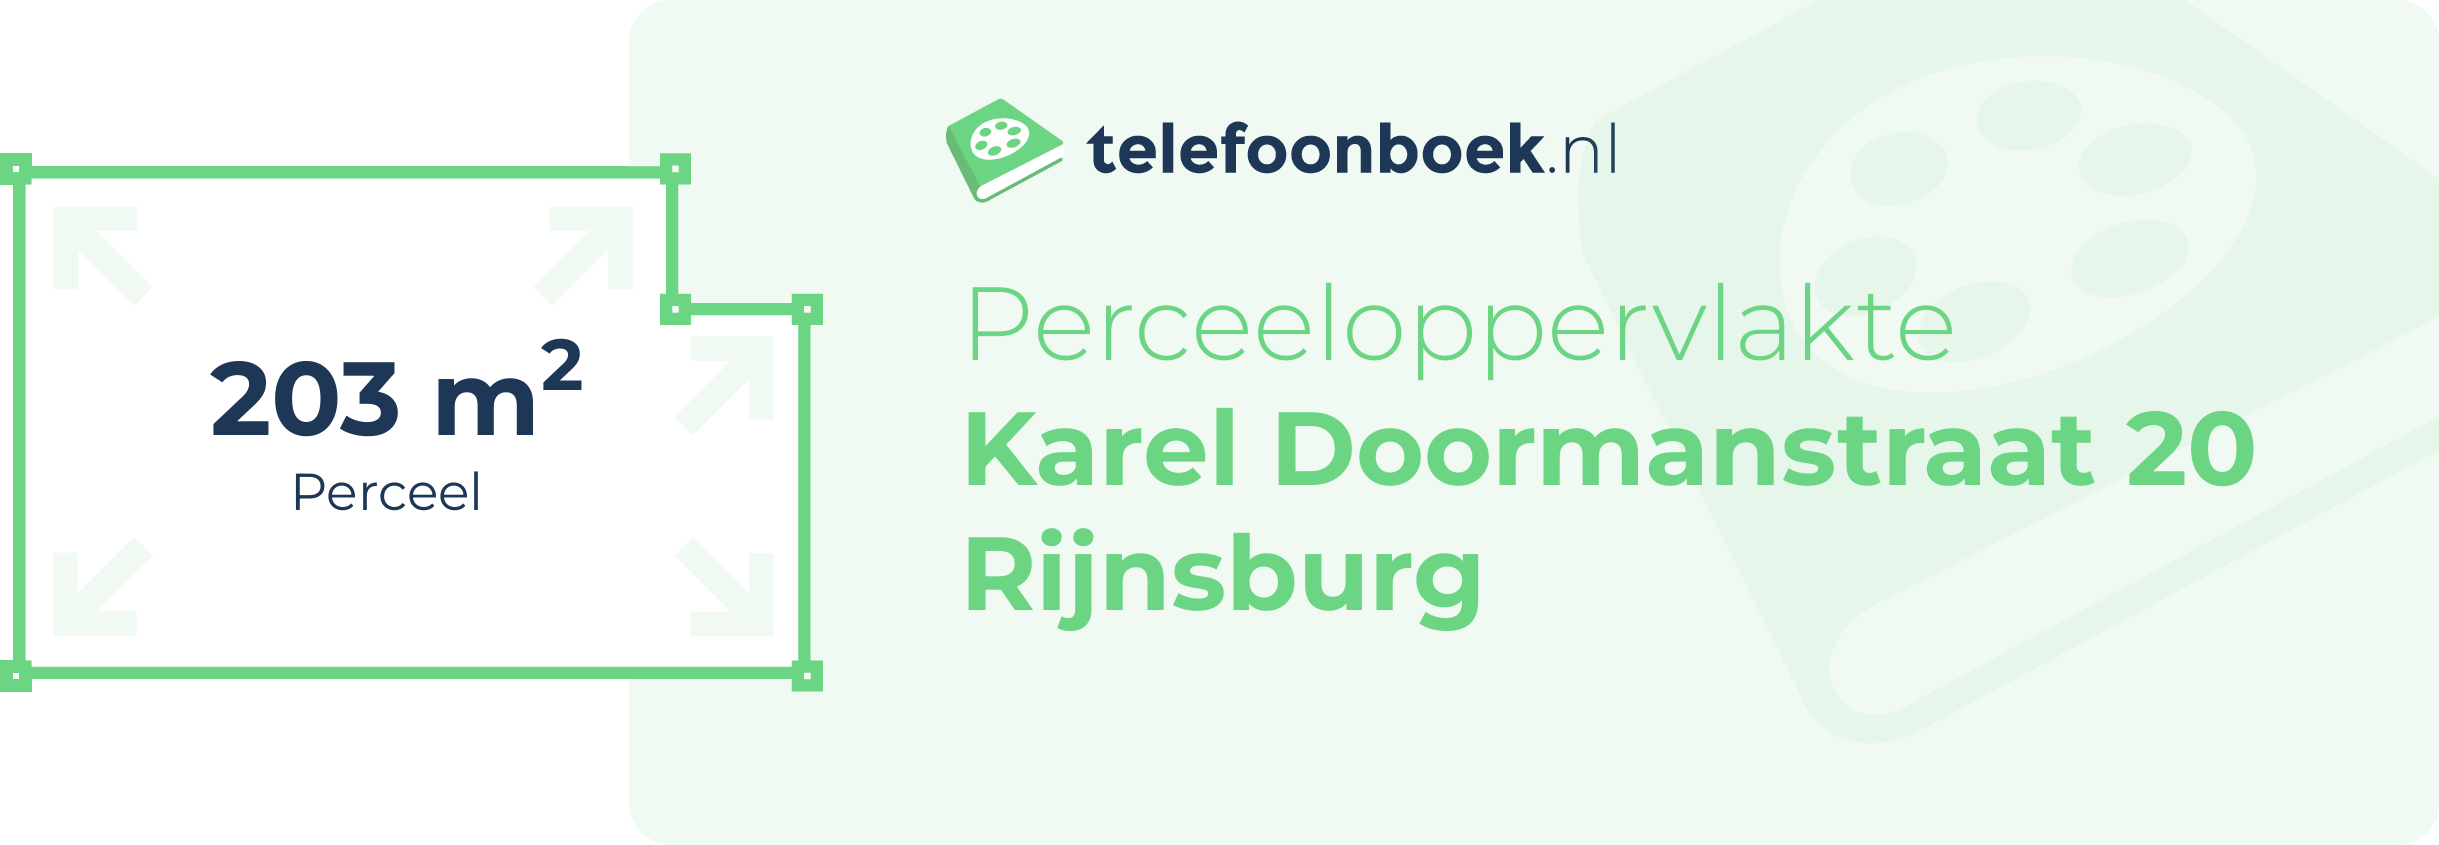 Perceeloppervlakte Karel Doormanstraat 20 Rijnsburg